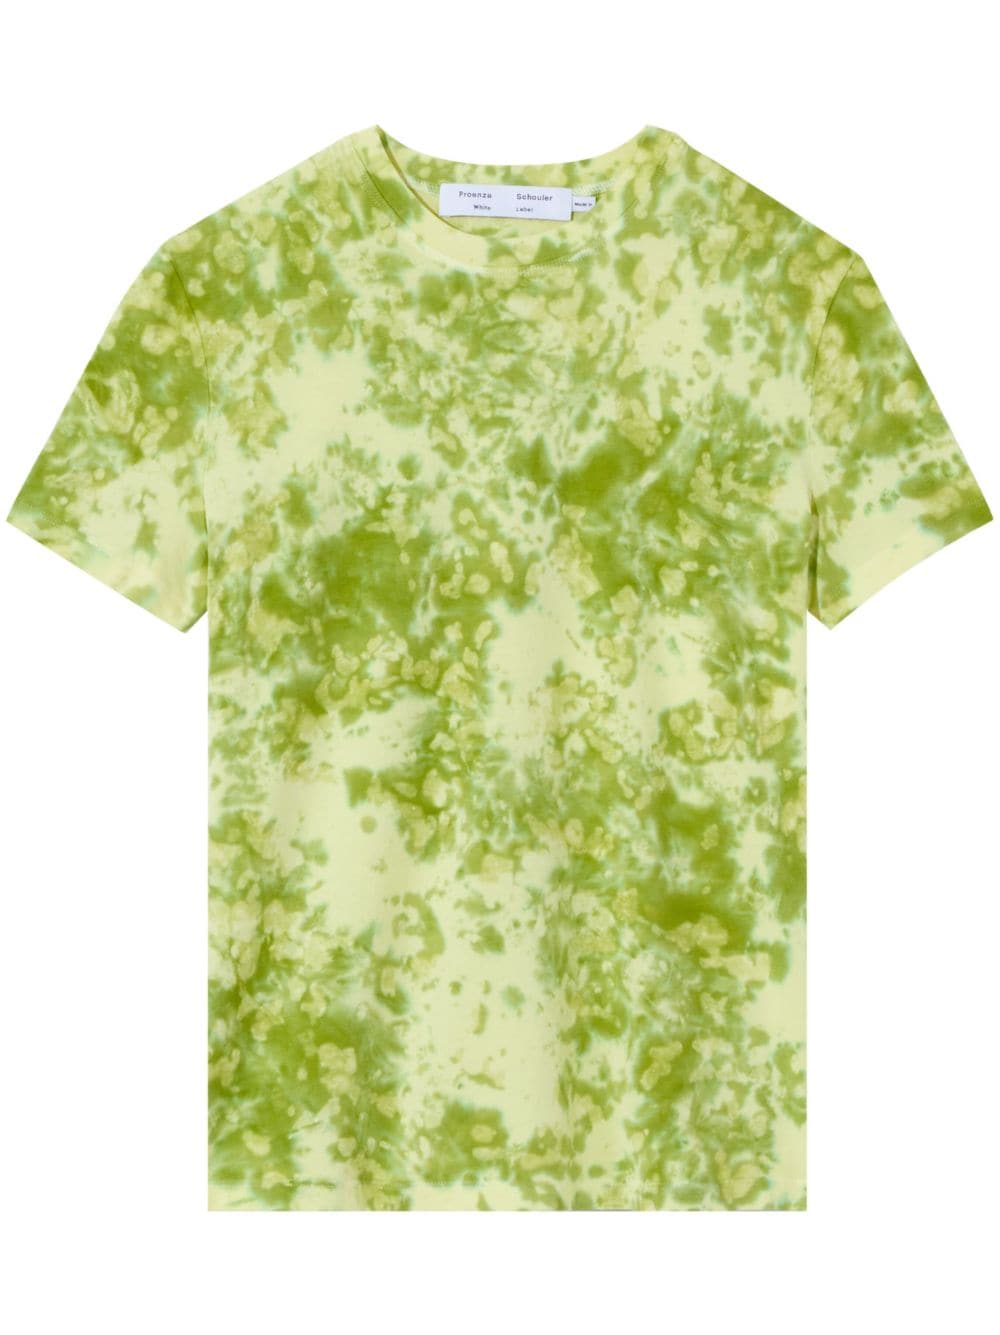 Proenza Schouler White Label tie-dye print cotton T-shirt - Green von Proenza Schouler White Label